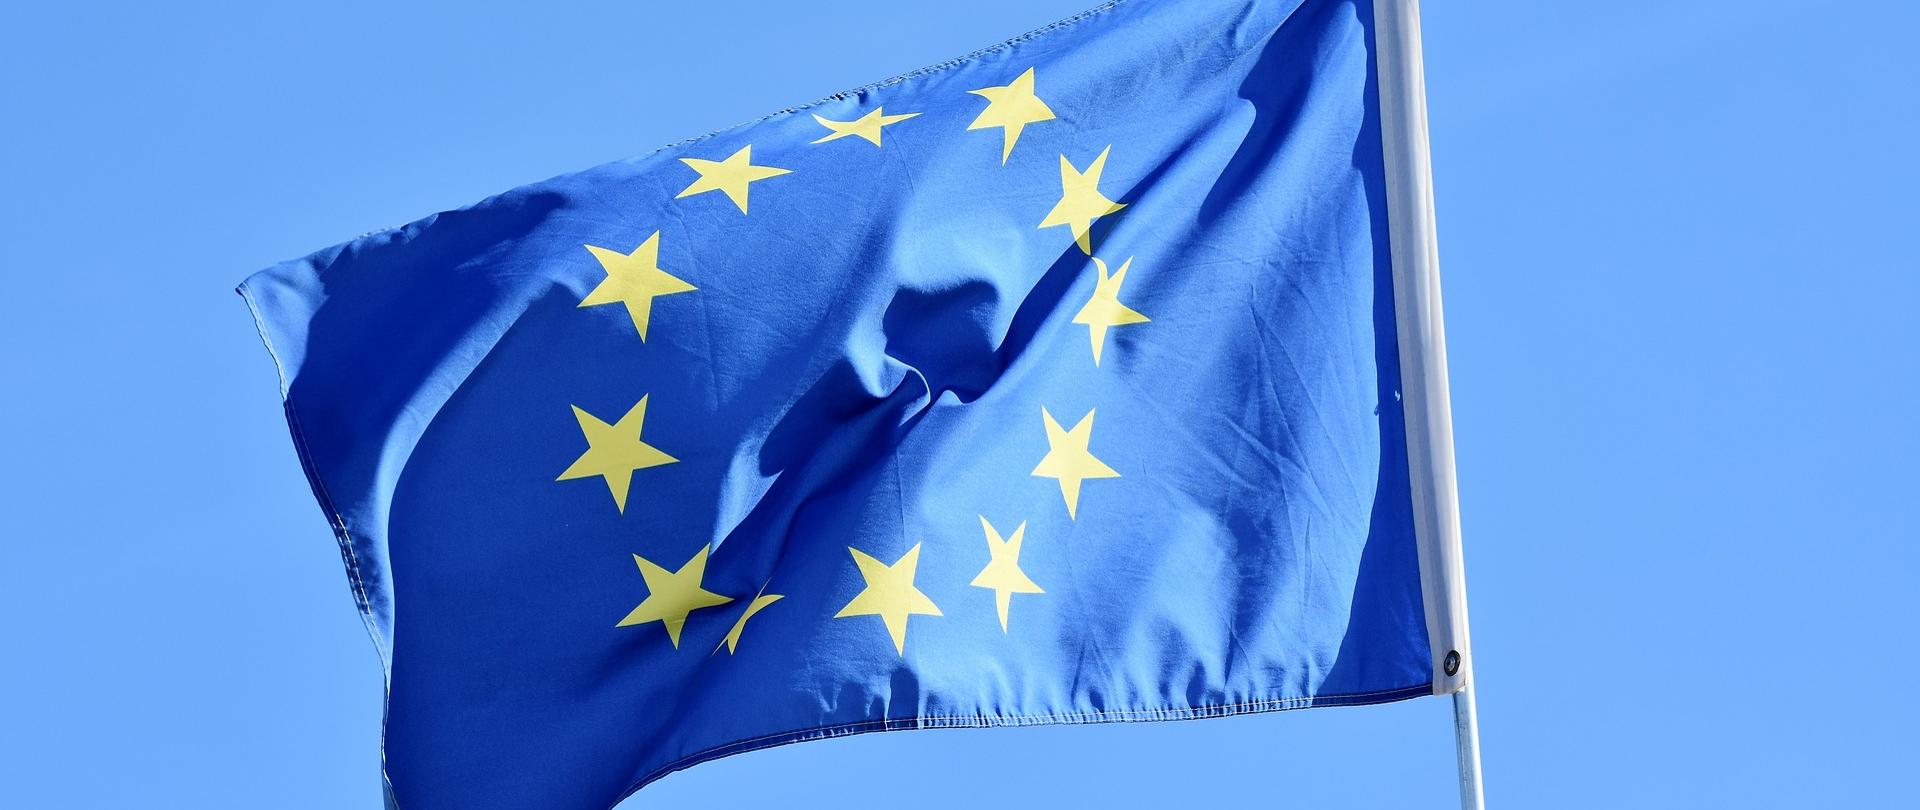 Na tle nieba zawieszona na maszcie flaga Unii Europejskiej - okrąg złożony z dwunastu złotych gwiazd na błękitnym tle